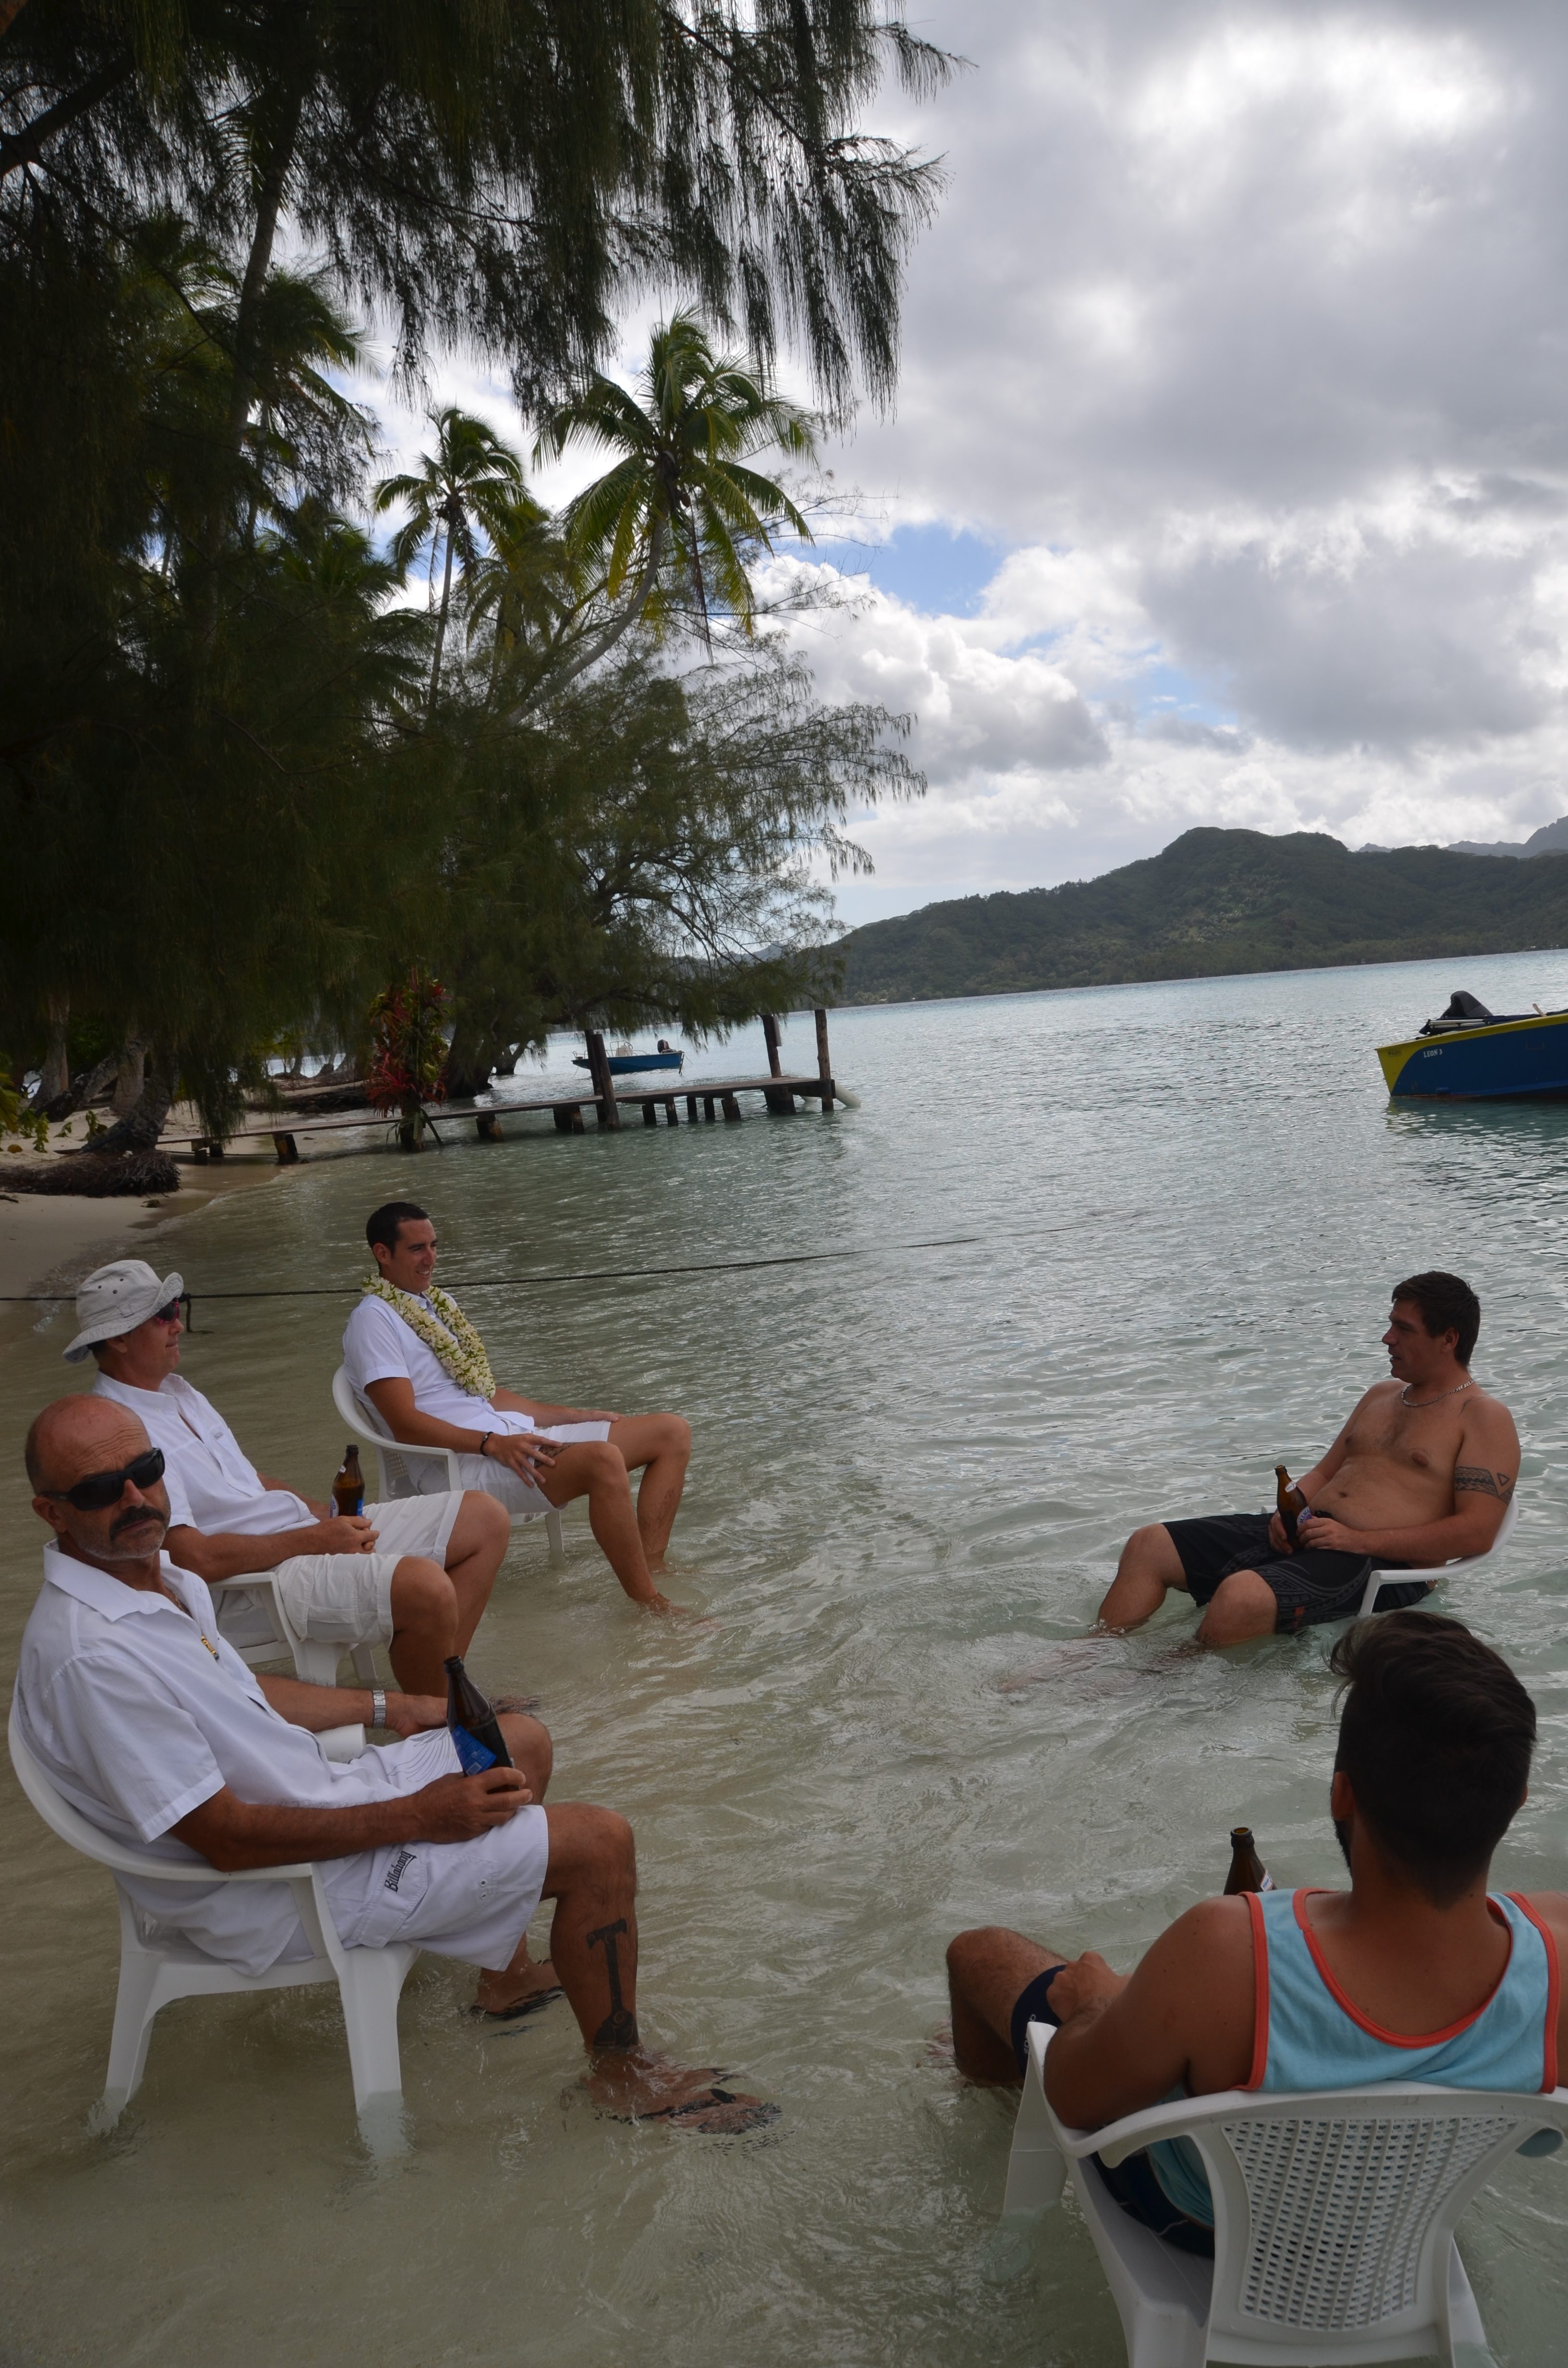 Mariage traditionnel en Polynésie
Les pieds dans l'eau